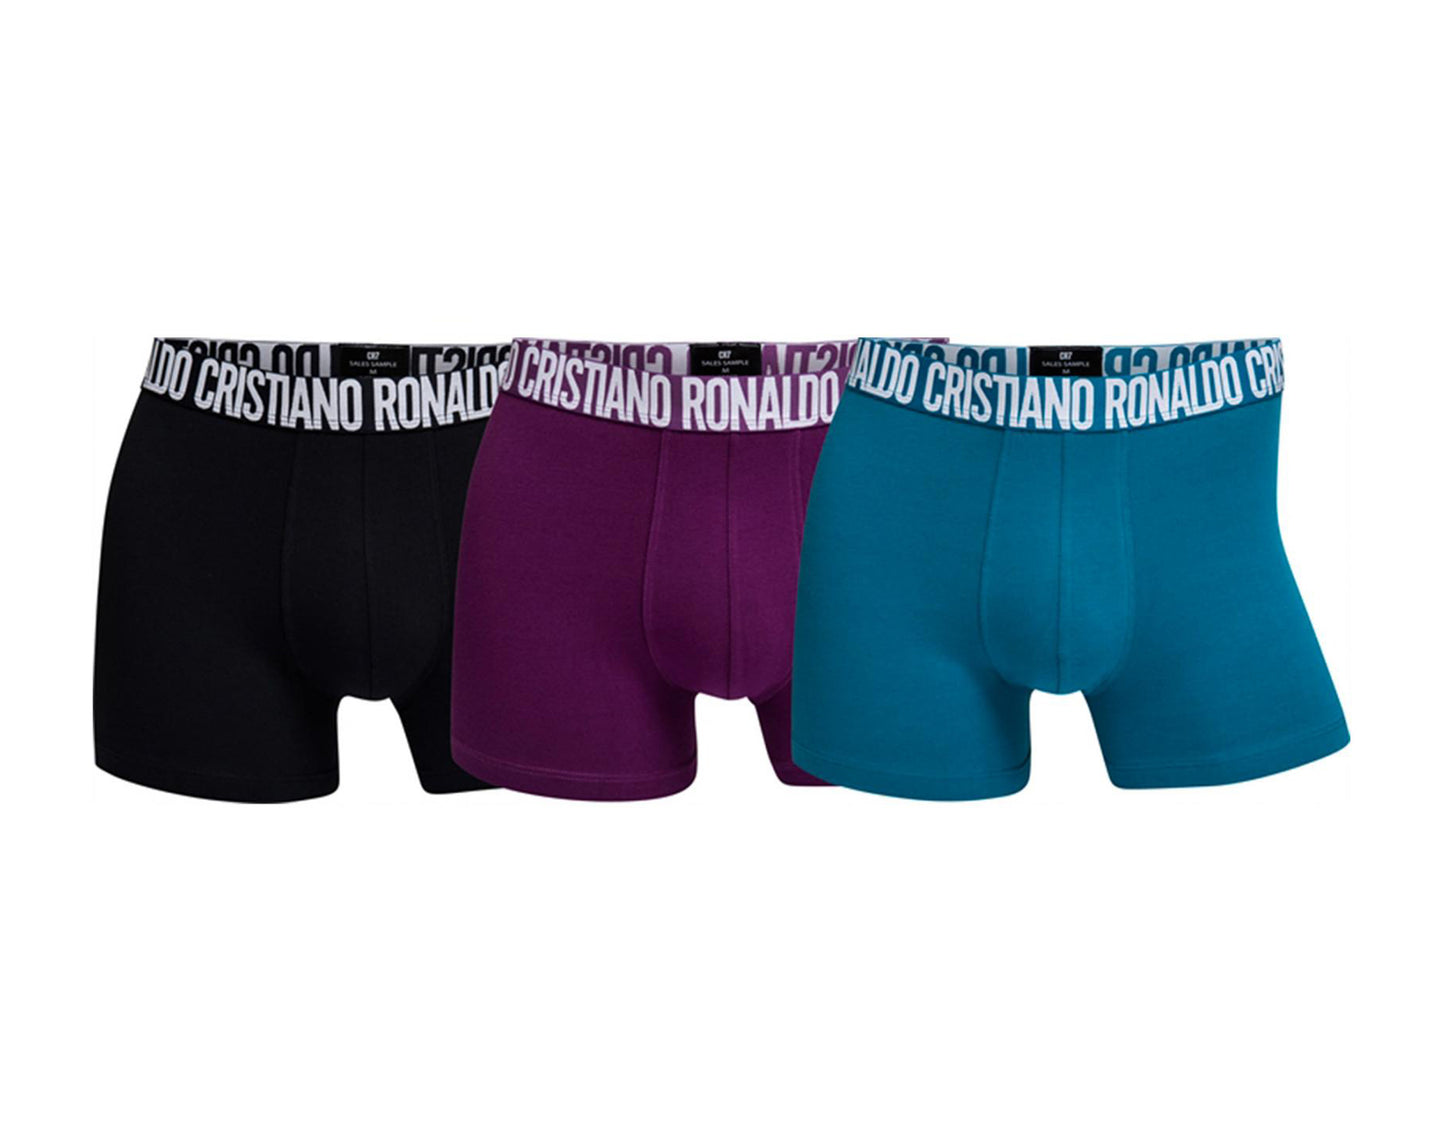 Cristiano Ronaldo CR7 Fashion 3-Pack Trunk Boxer Briefs Men's Underwear